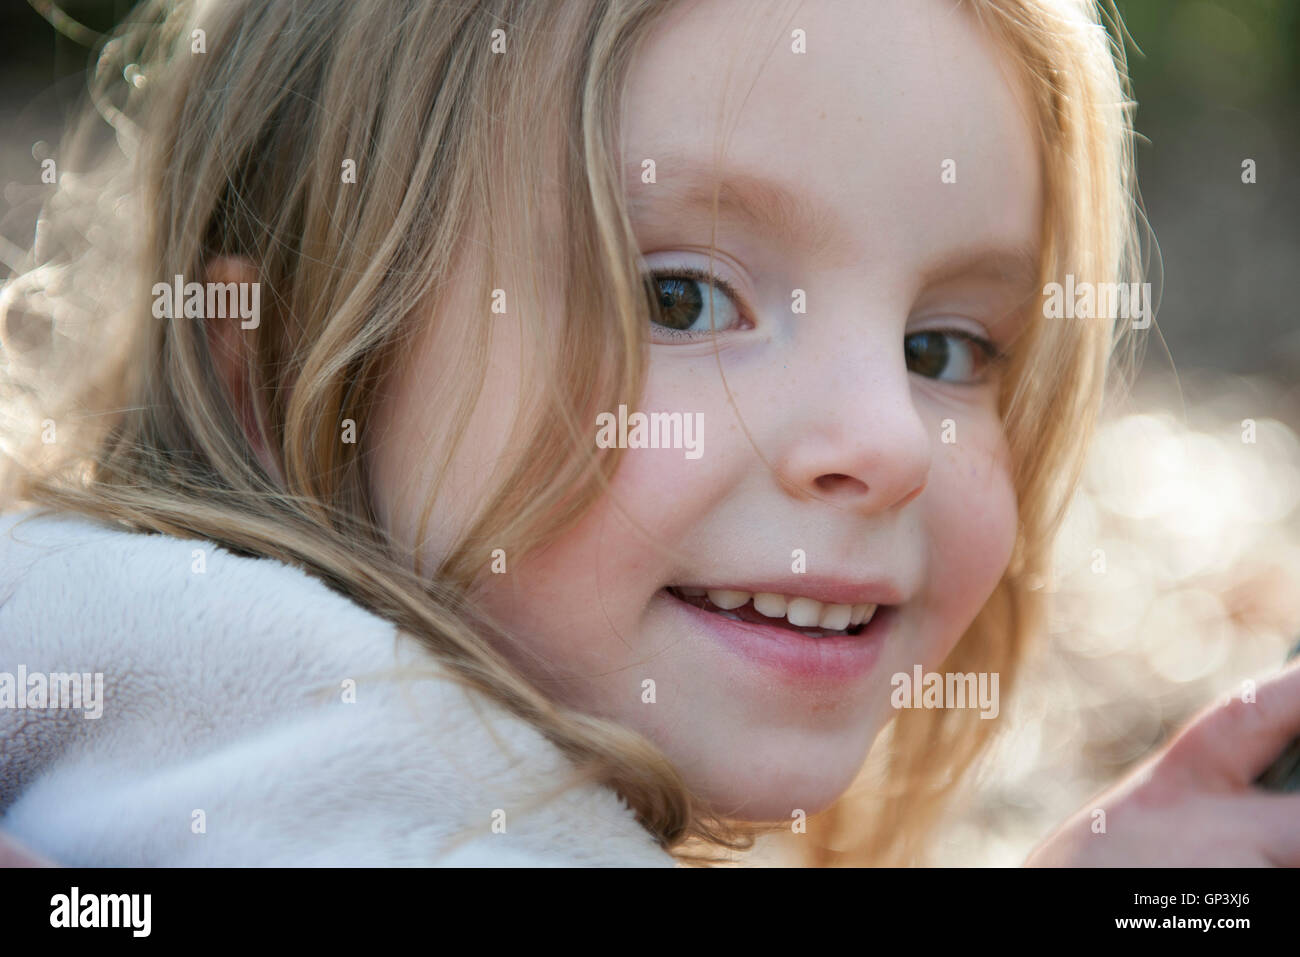 Little girl smiling, portrait Stock Photo